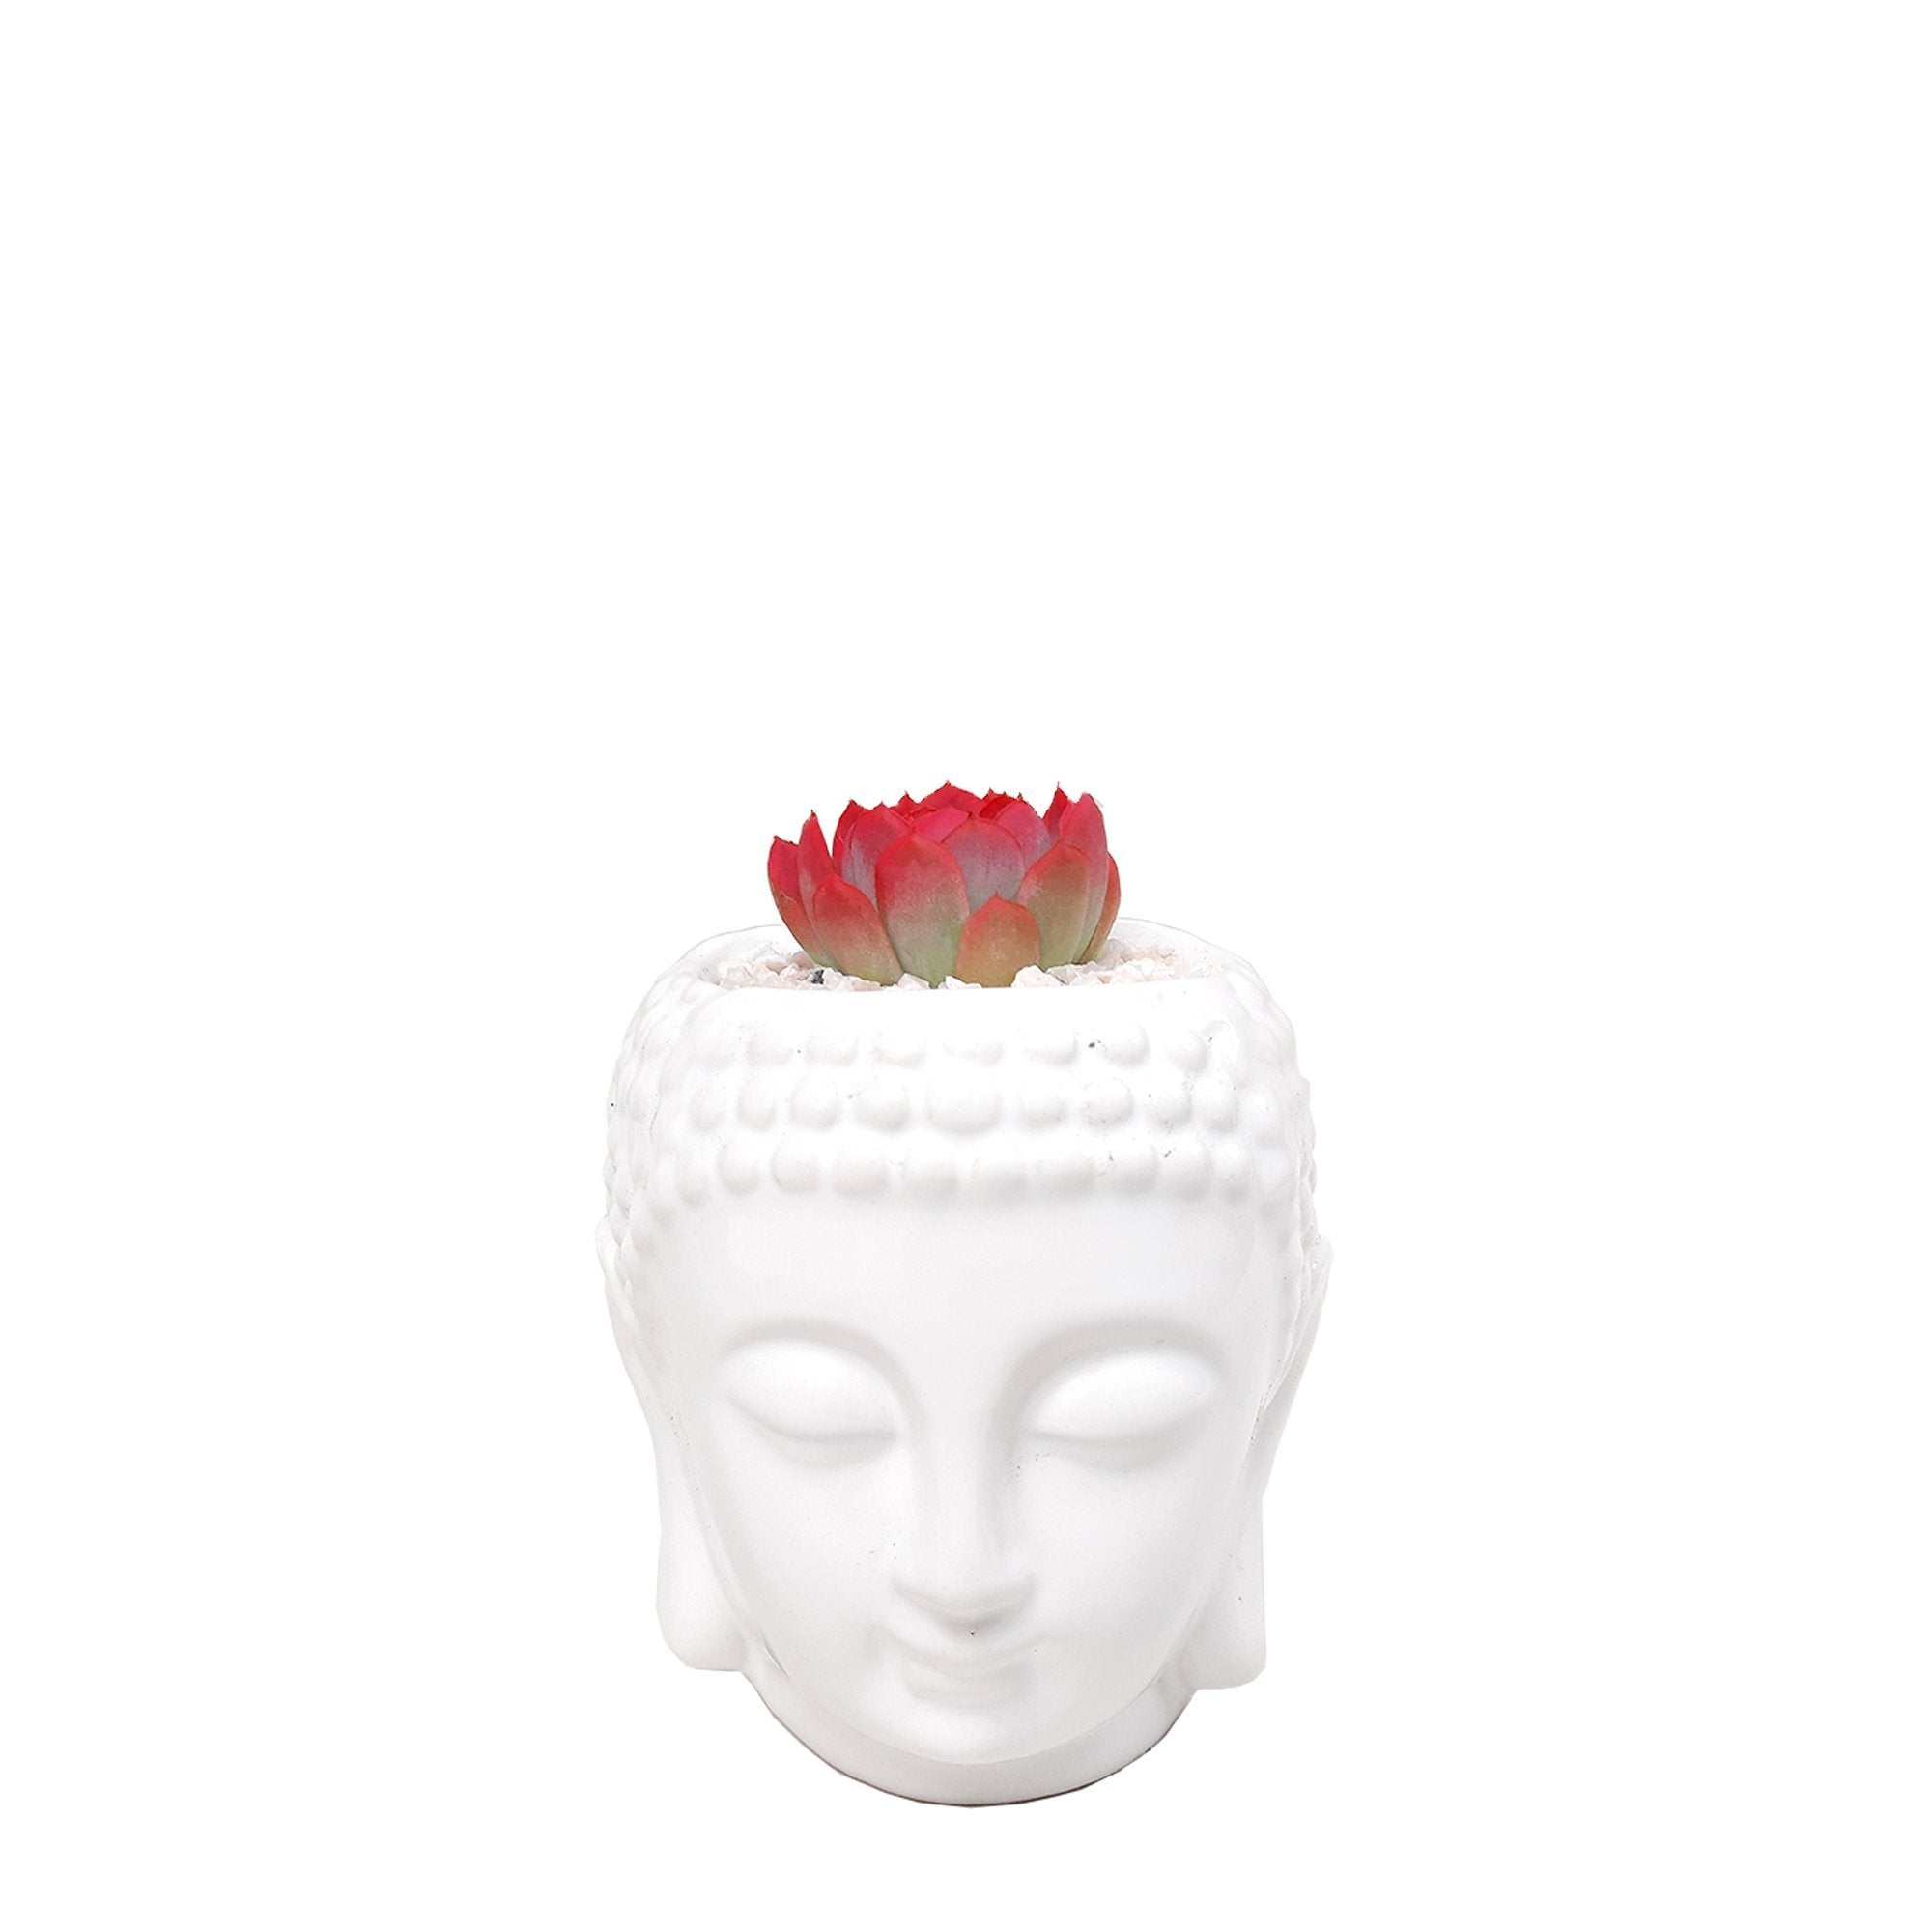 Matera buddha con suculenta roja plano entero